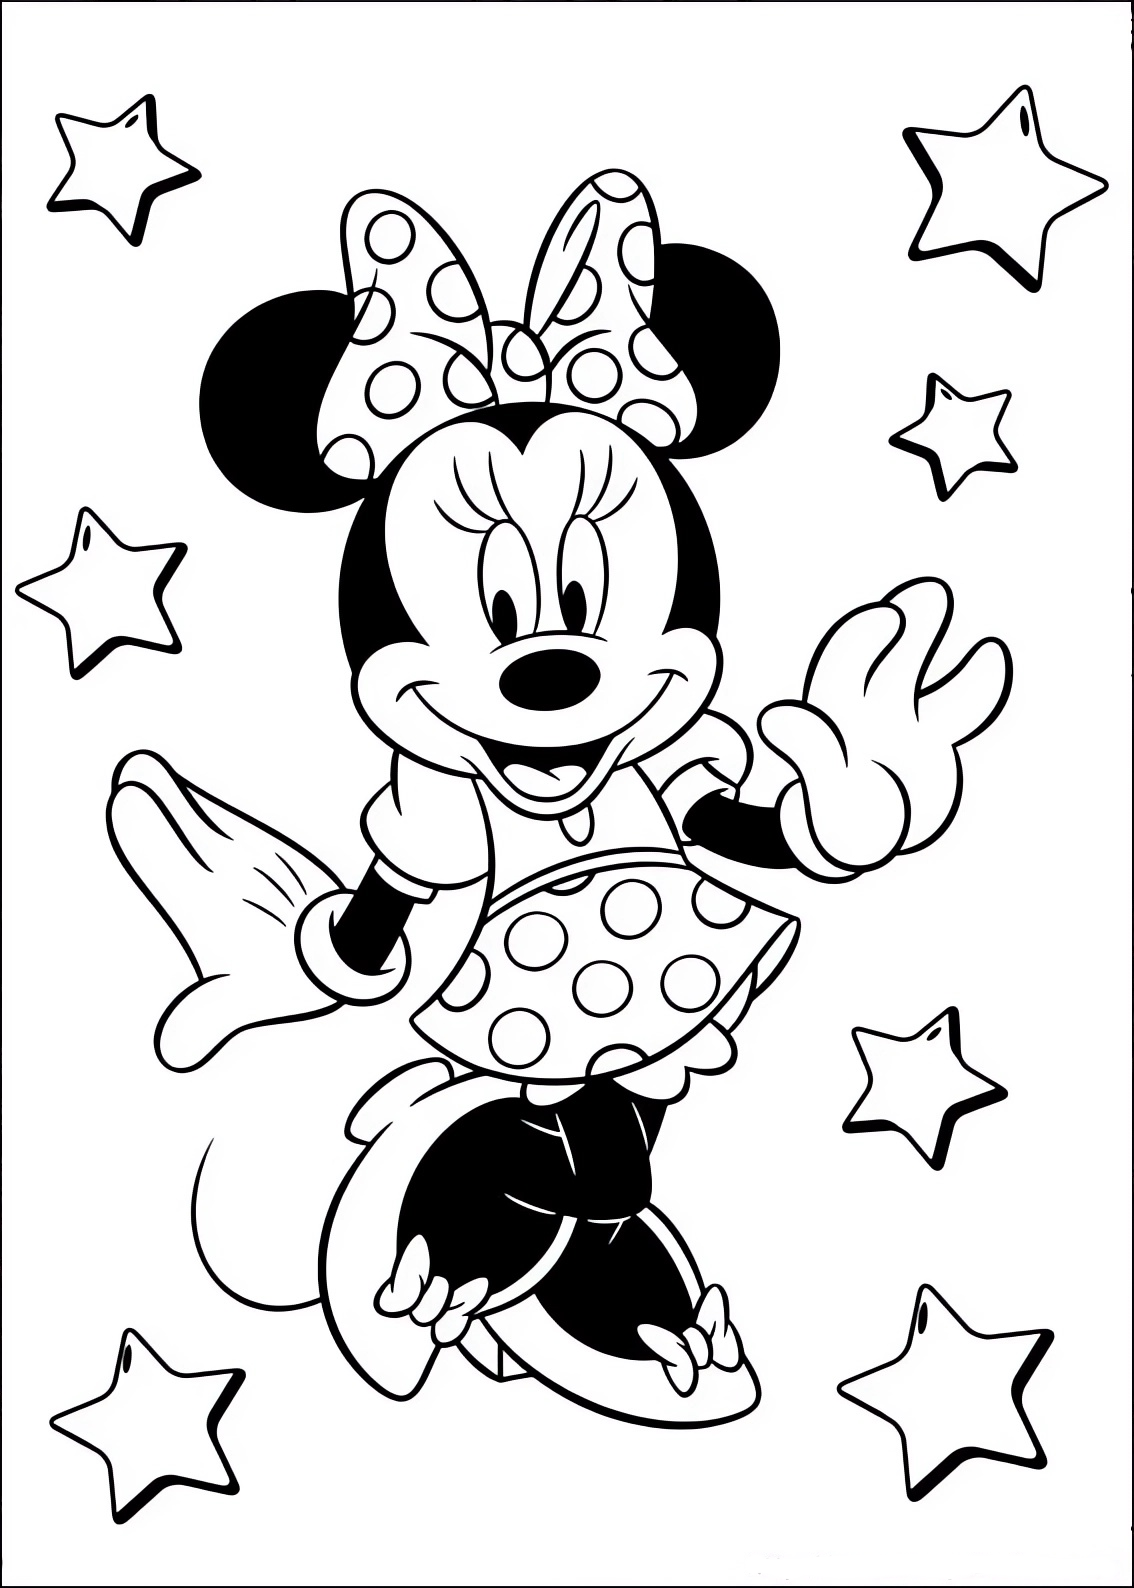 Disegno da colorare di Minnie fra le stelle 